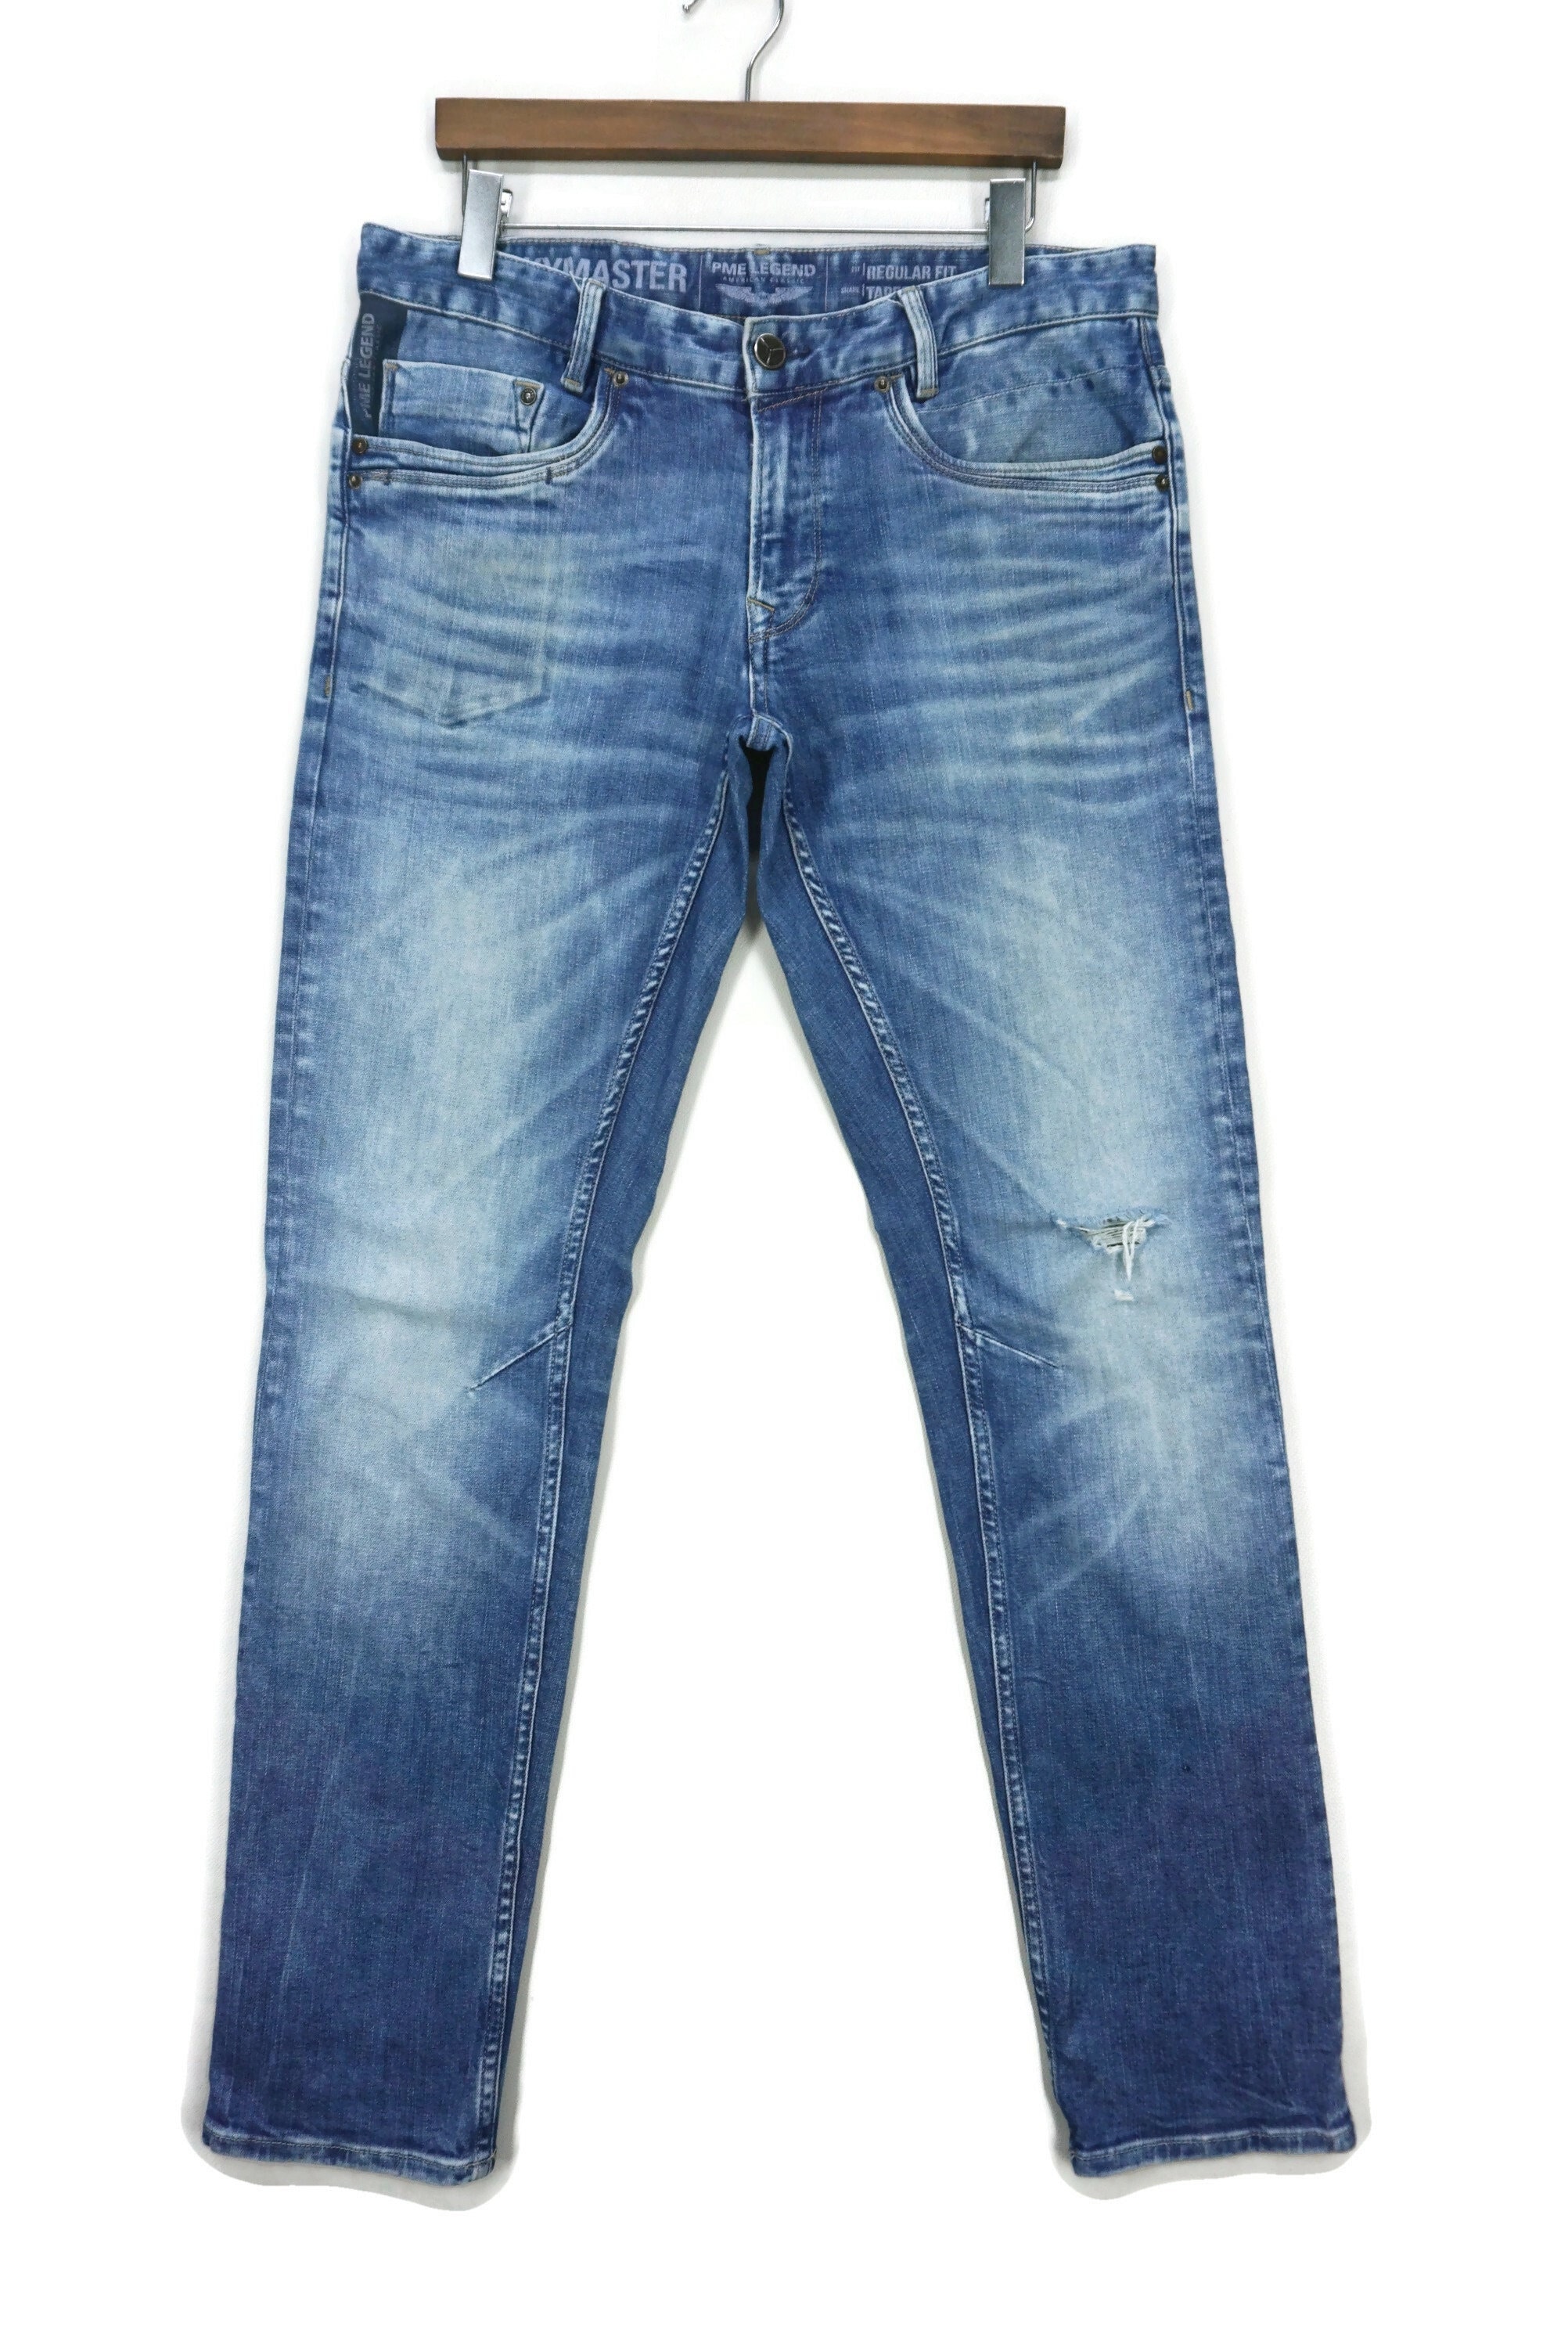 Opname vraag naar uitslag PME Legend Jeans Size 33 W36xl34.5 PME Sky Master Regular Fit - Etsy